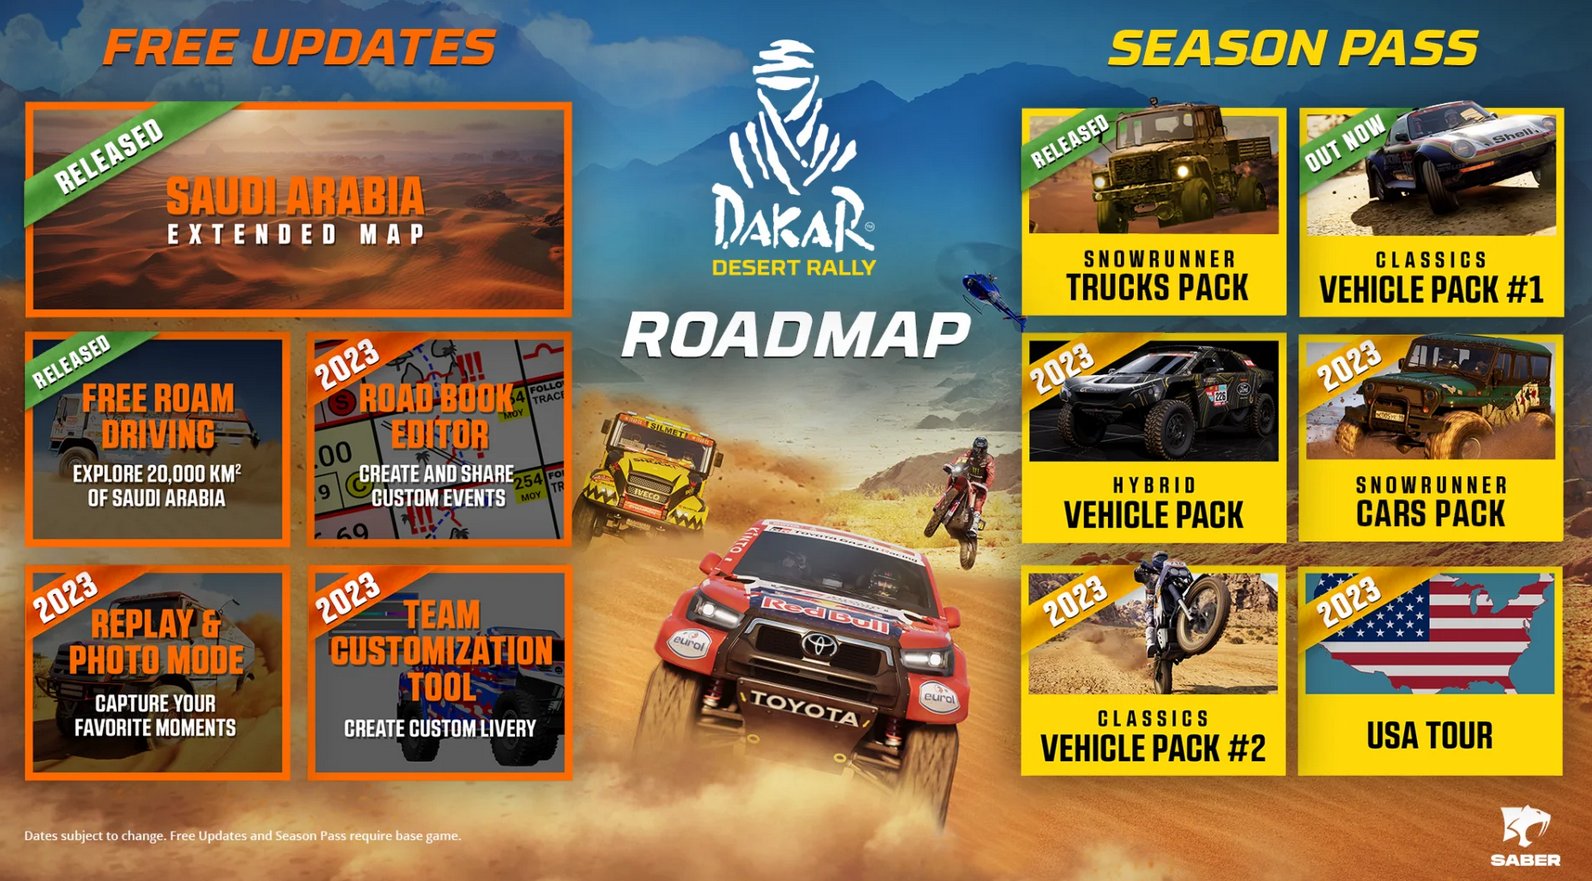 Dakar Desert Rally Roadmap.jpg